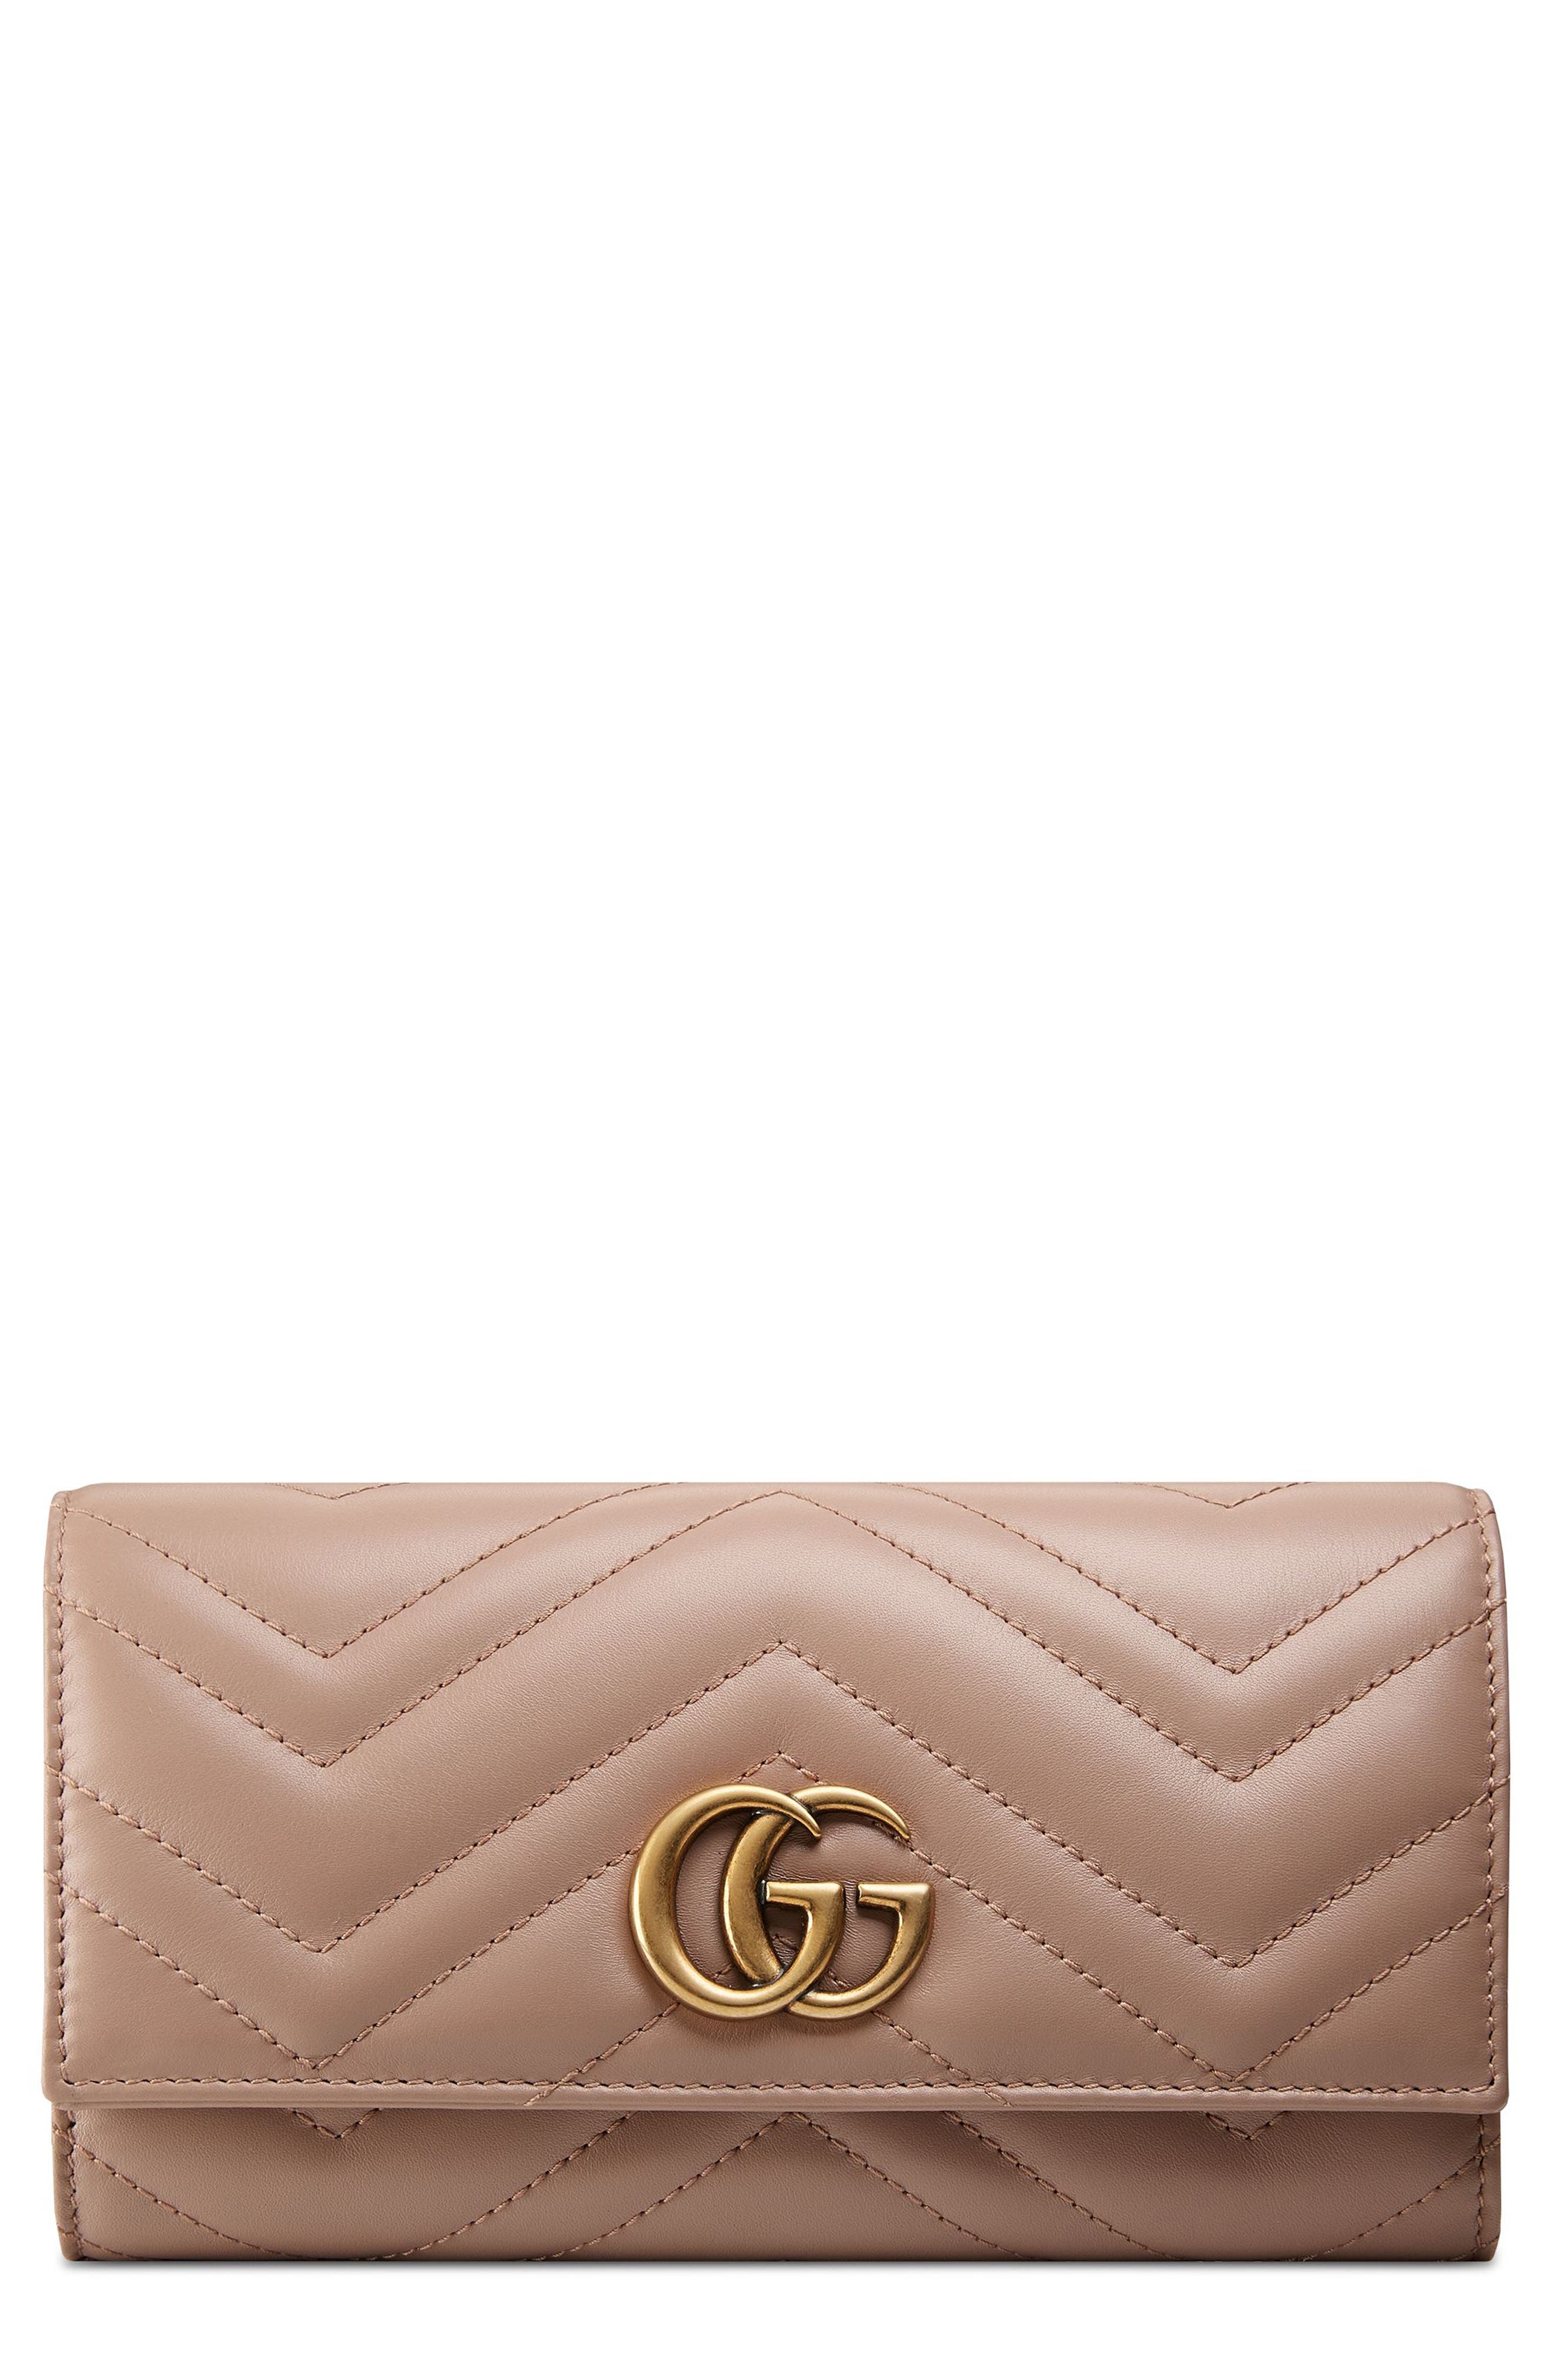 gg marmont matelassé leather wallet